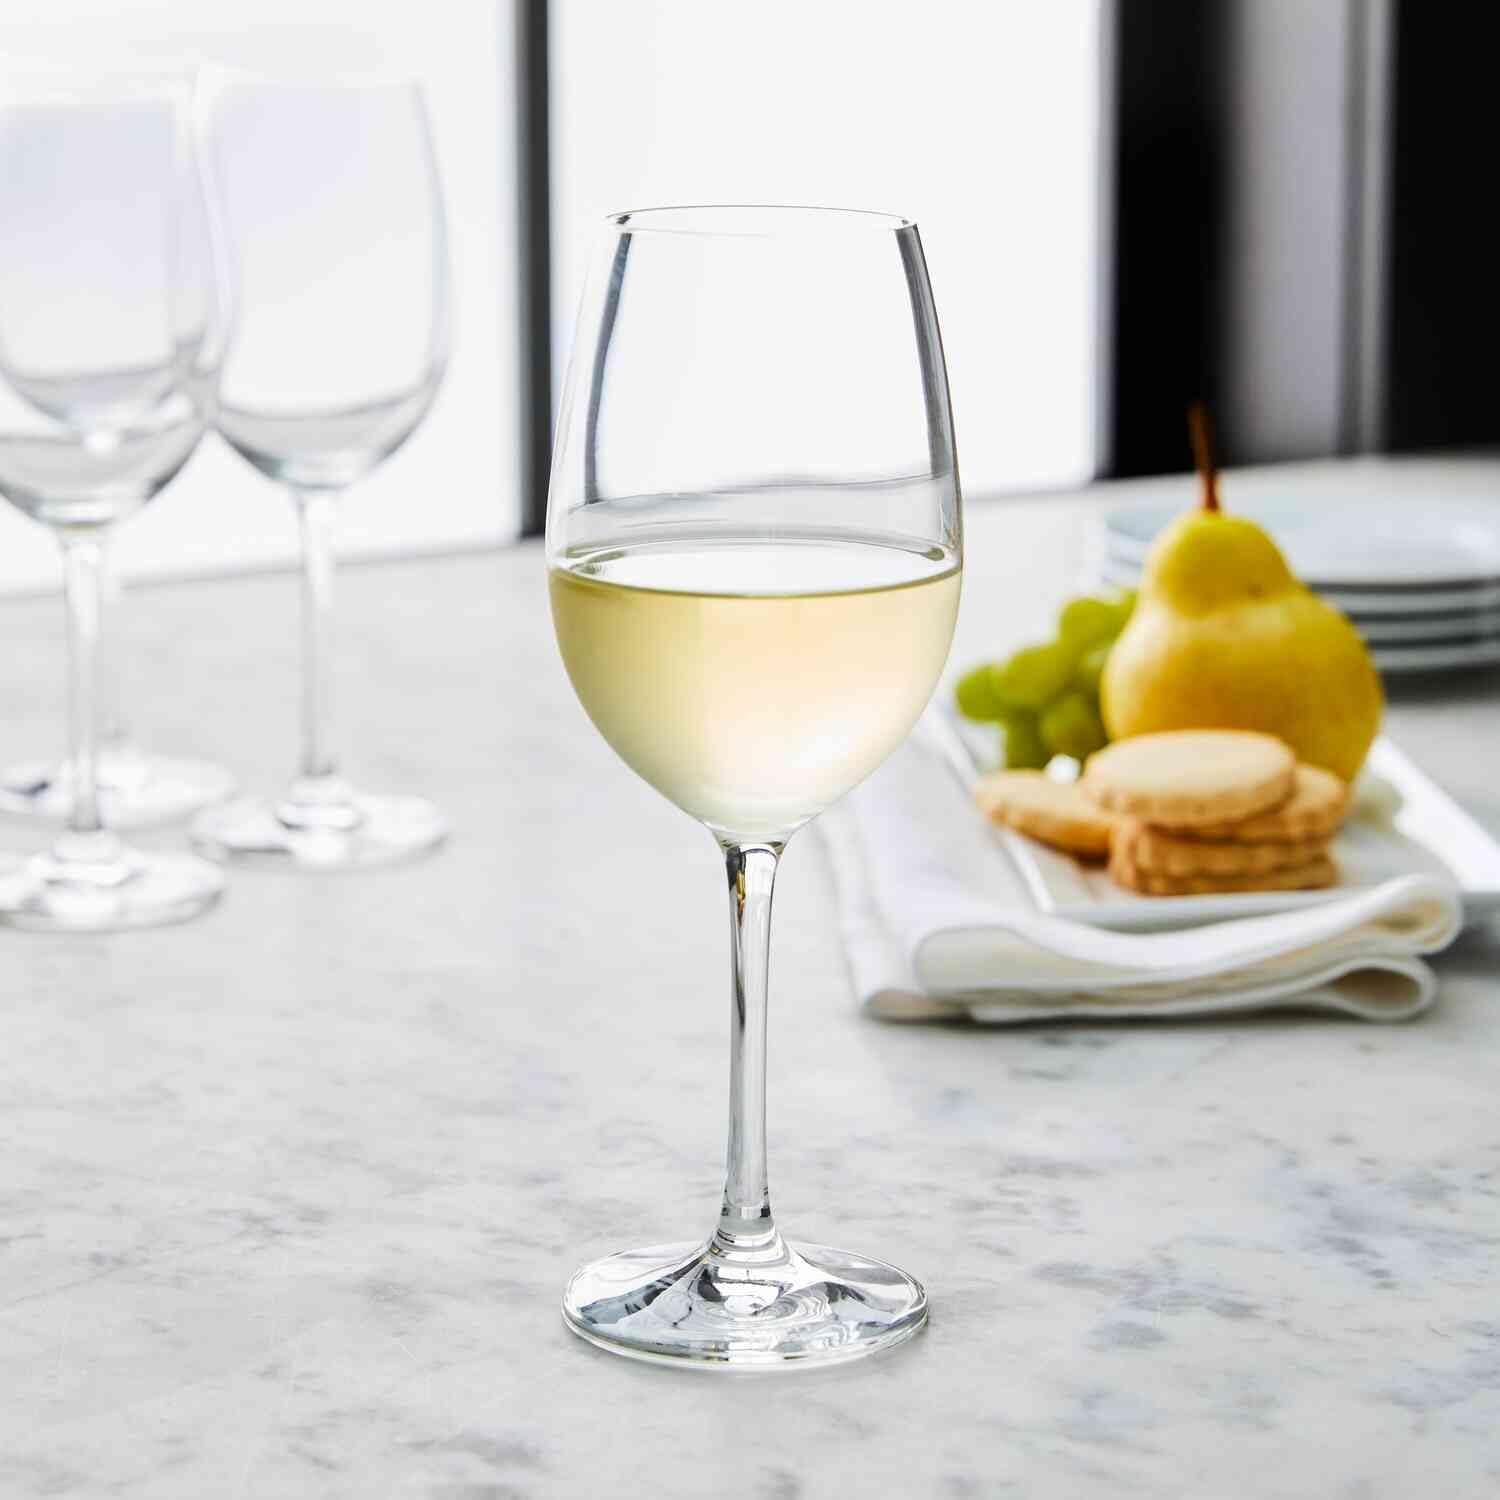 Sur La Table Chateau Soft White Wine Glass, Clear